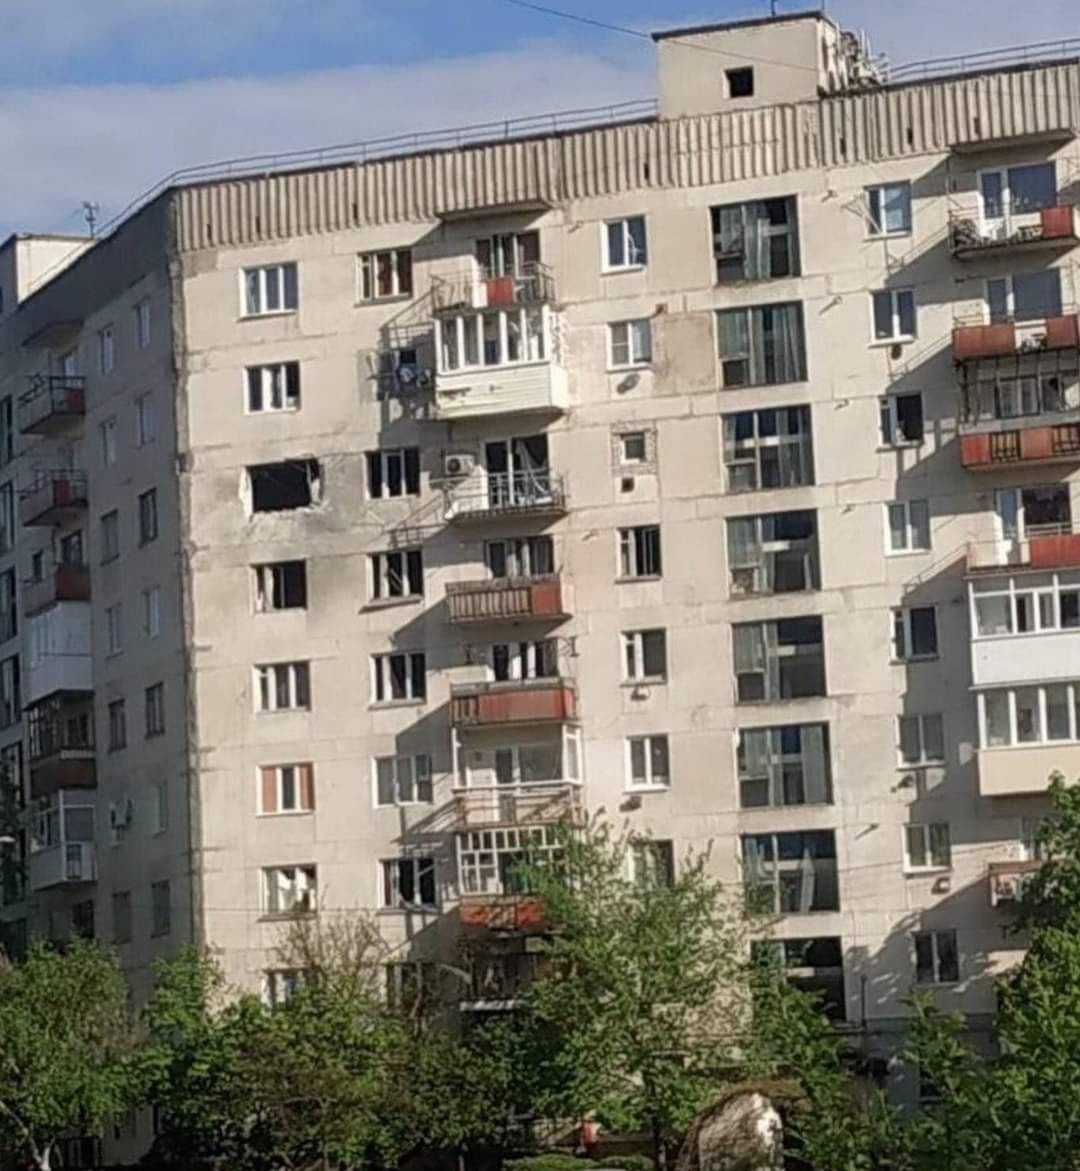 В Мукачево демонтировали памятник Пушкину